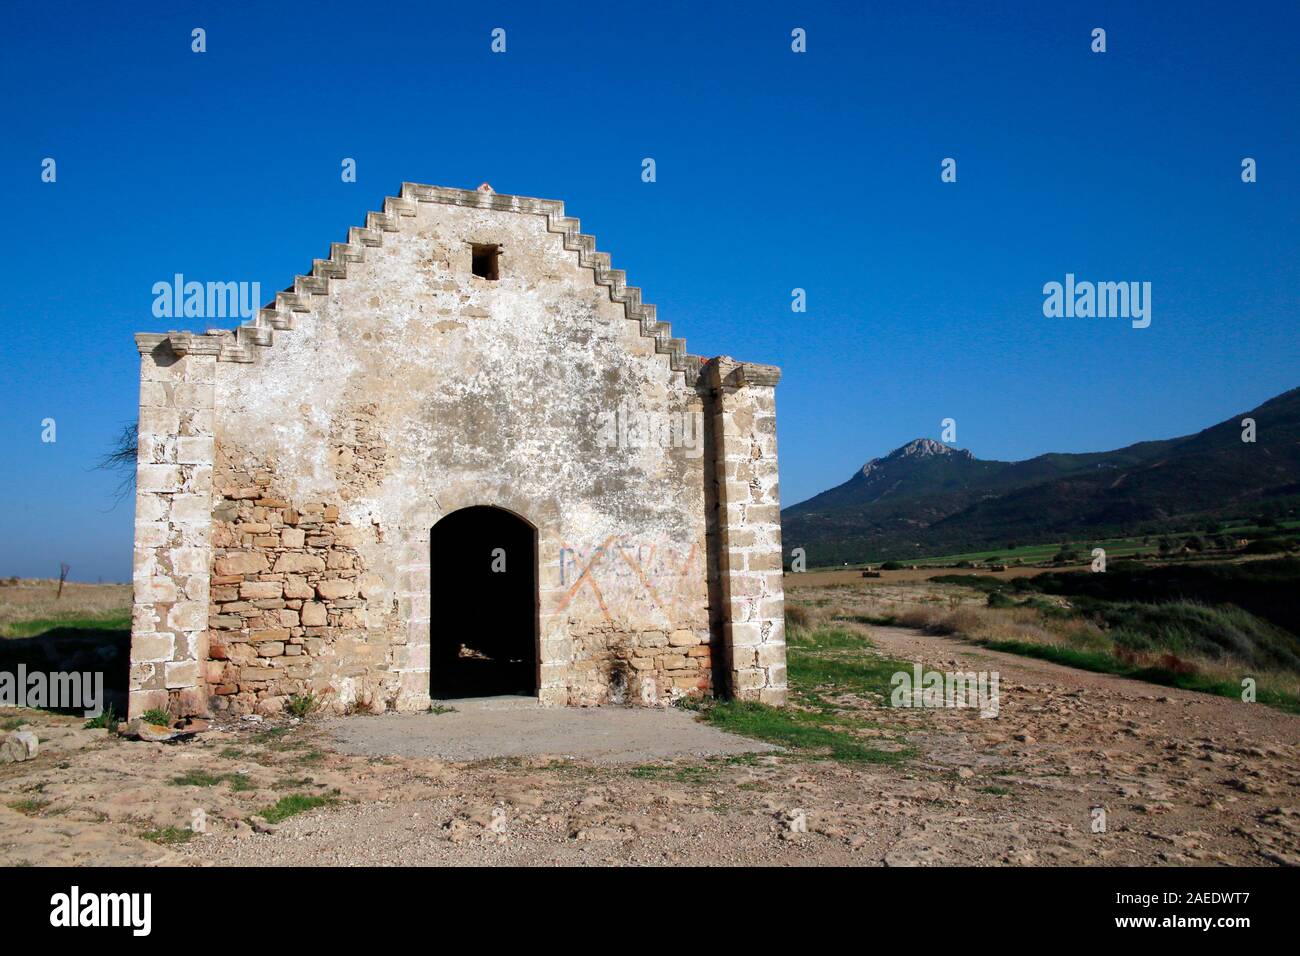 Entweihte Kirche bei Kaplica (auf griechisch Davlos), Türkische Republik Nordzypern Foto Stock